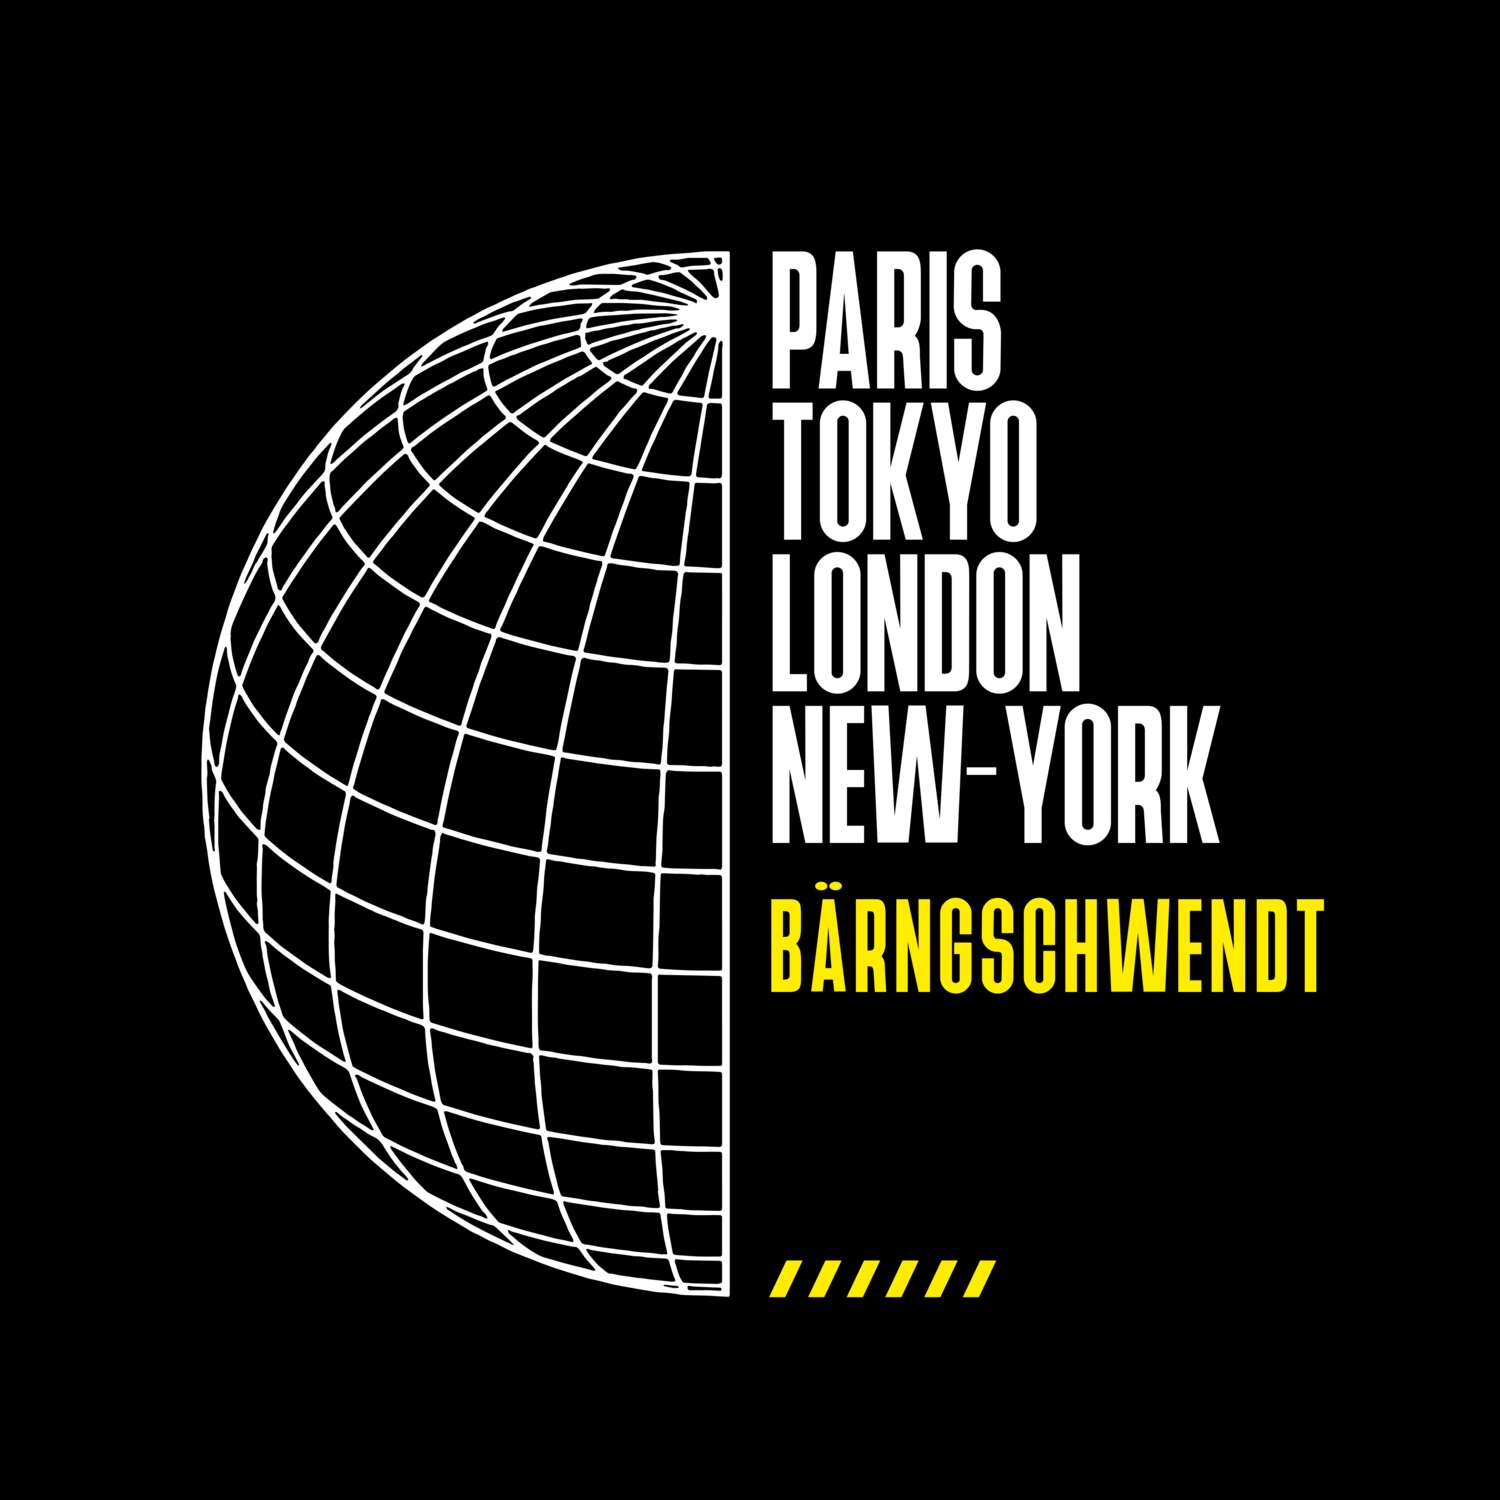 Bärngschwendt T-Shirt »Paris Tokyo London«